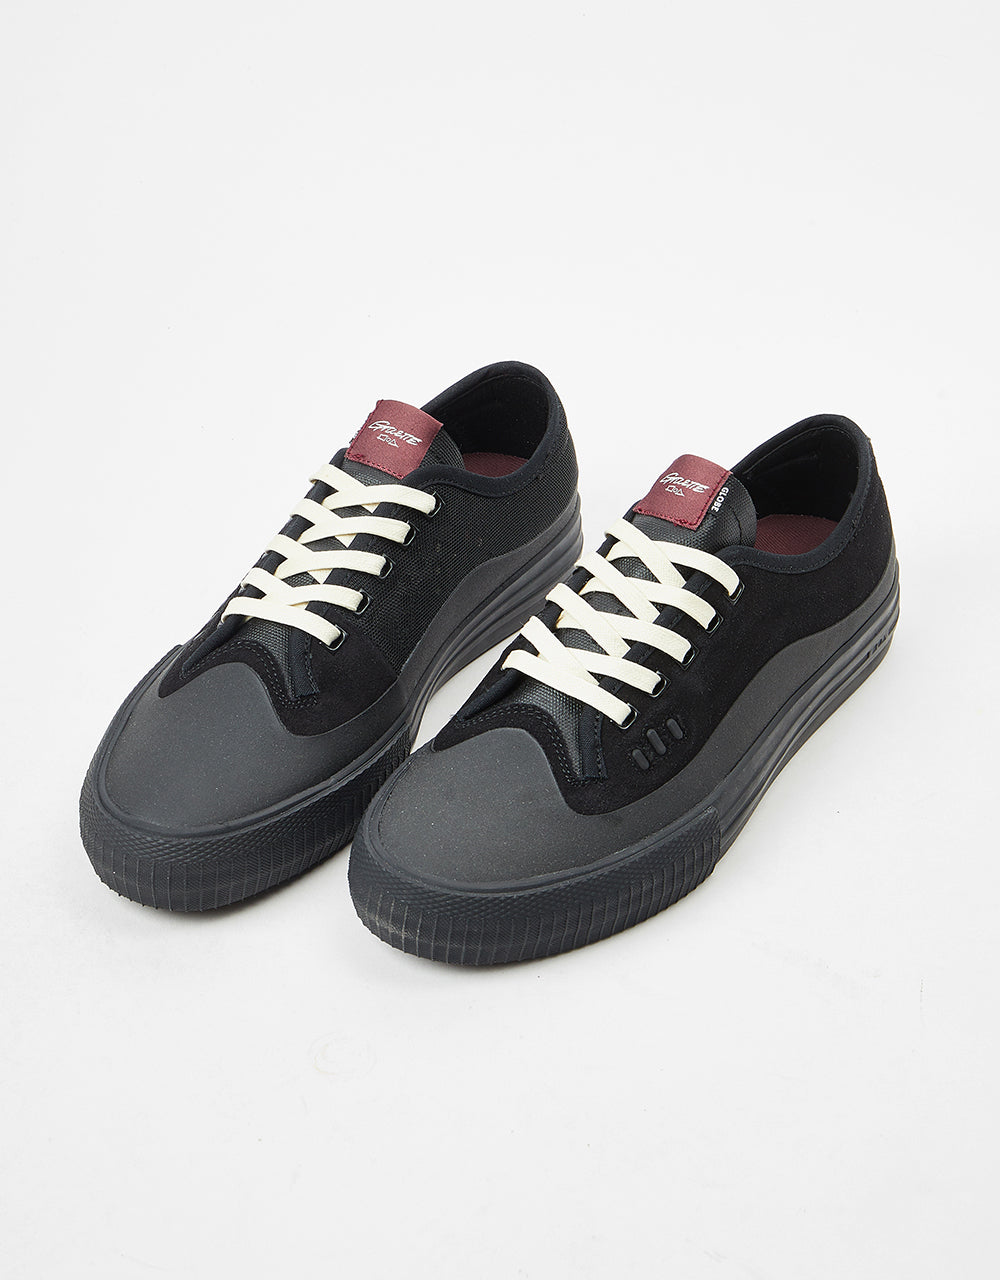 Globe Gillette Skate Shoes - Black/Black Suede